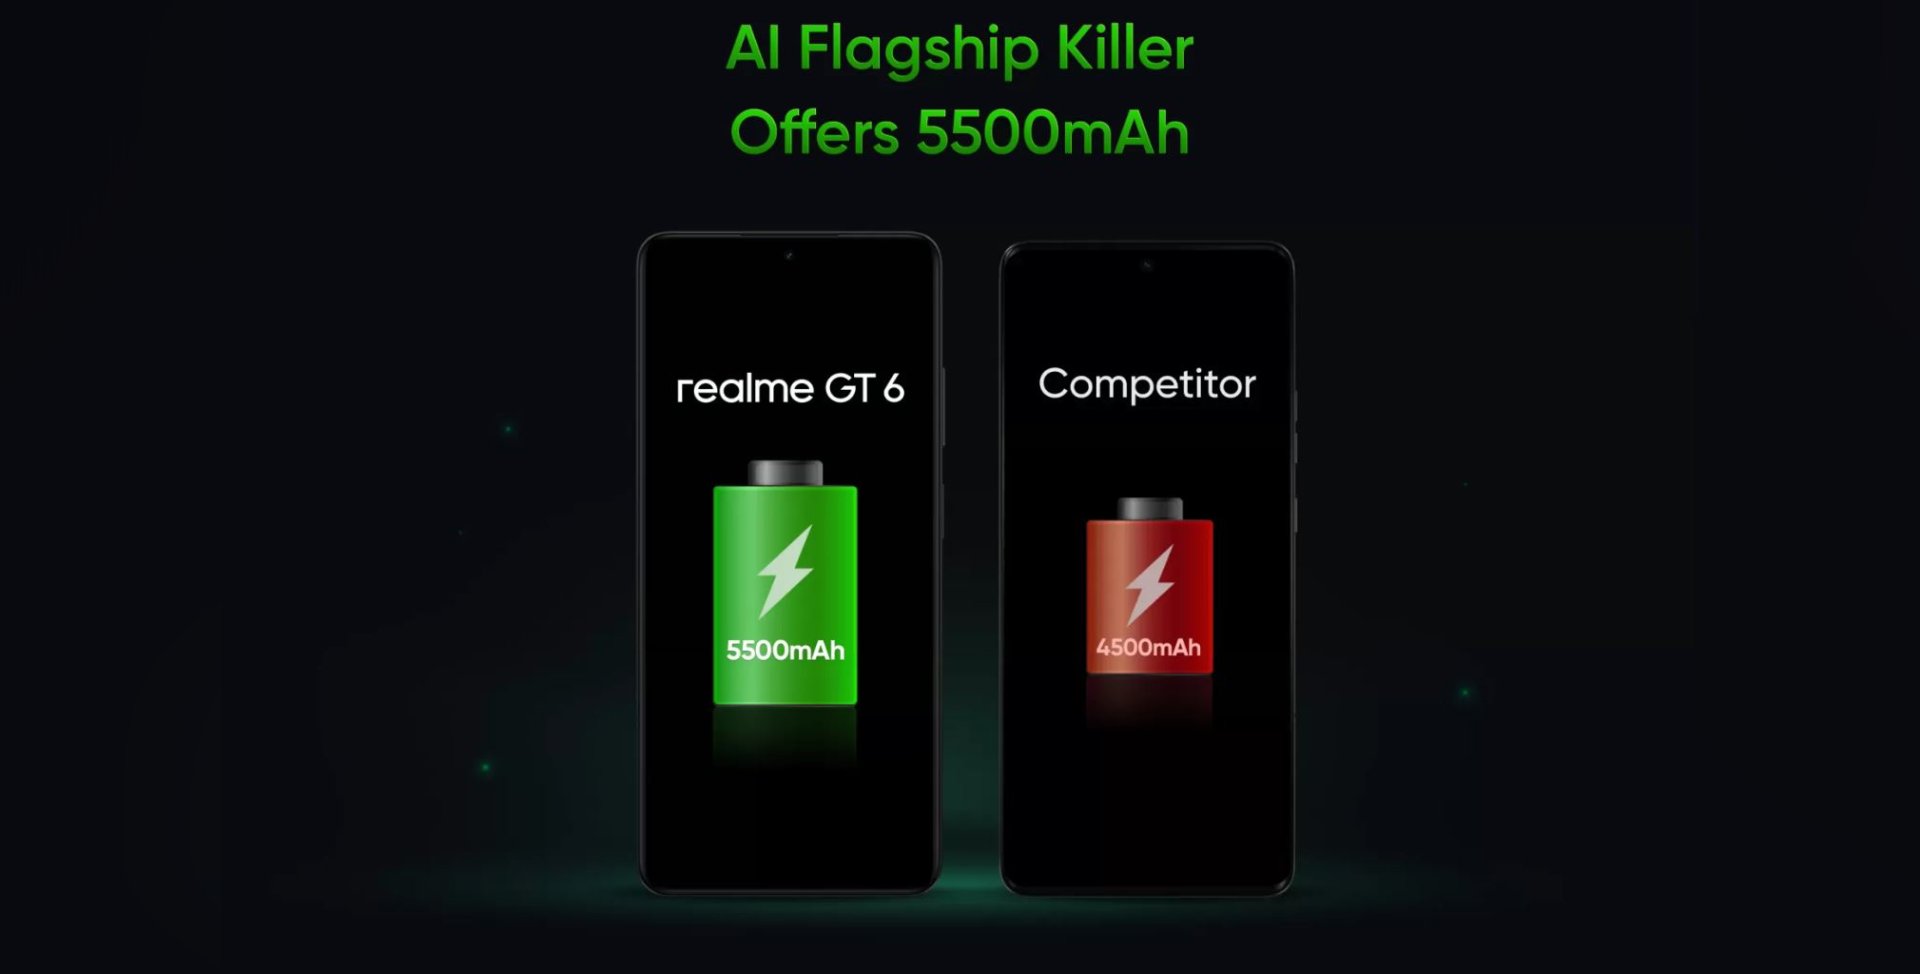 ทีเซอร์ Realme GT 6 ยังปล่อยต่อเนื่อง เผยฟีเจอร์ AI ลบวัตถุในรูป และสเปกแบตเตอรี่ !